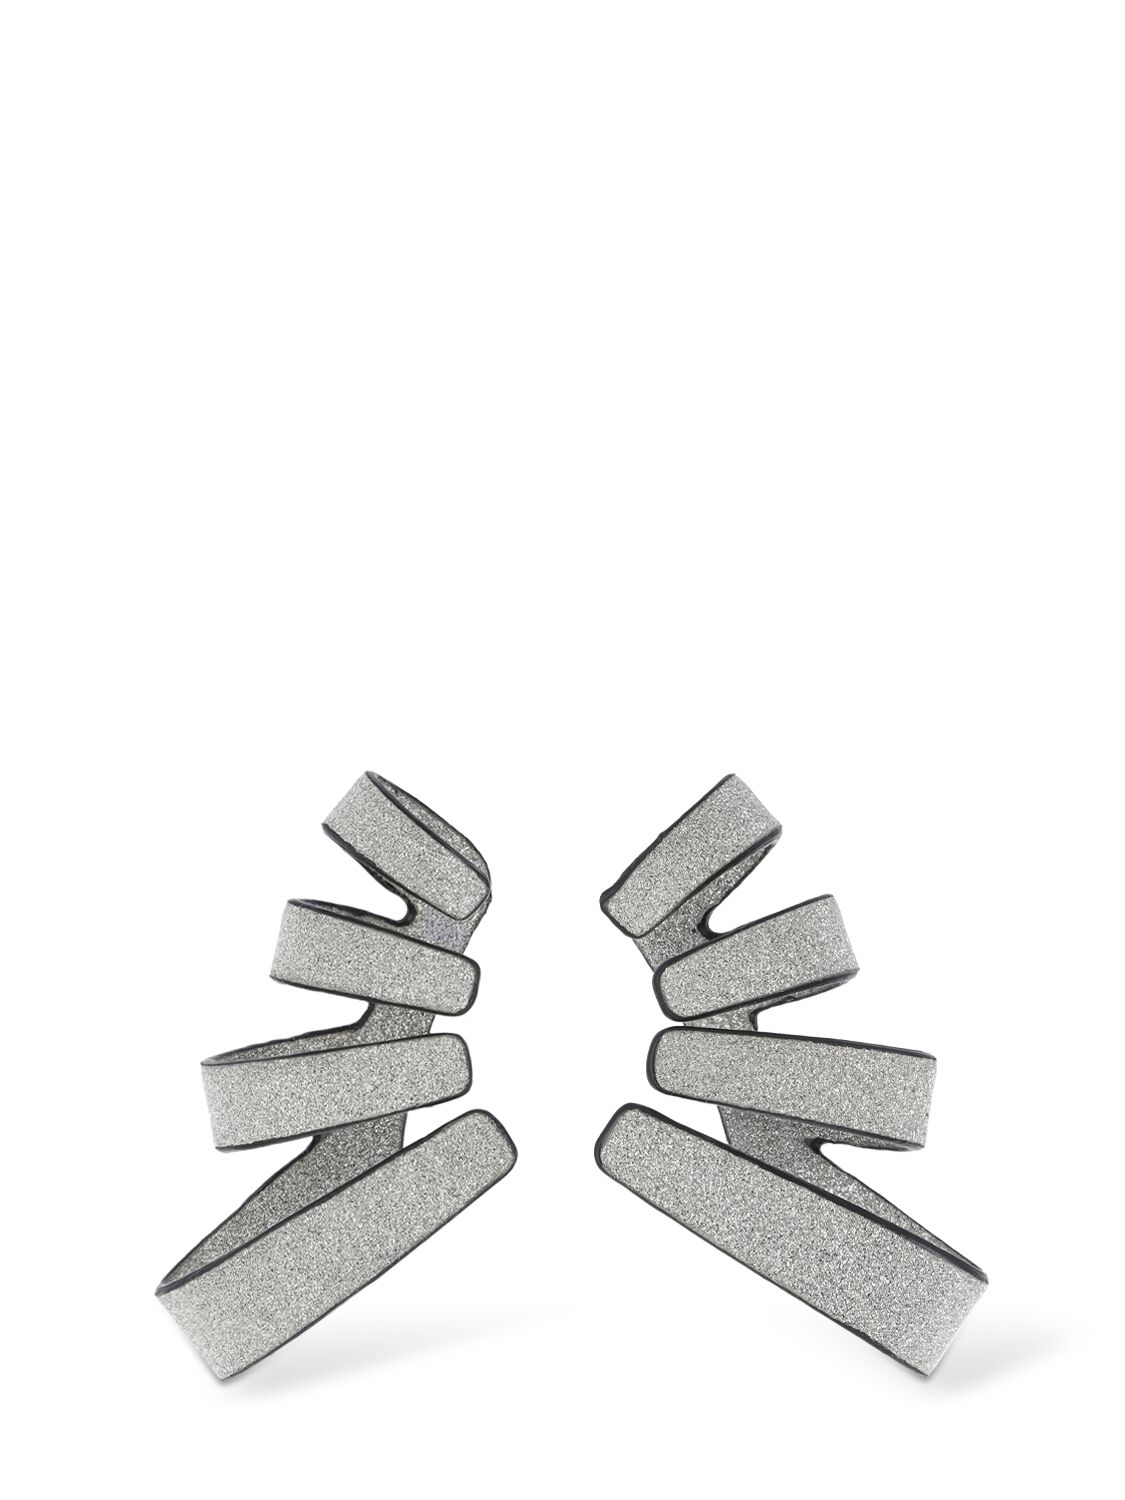 So-le Studio Zephir Leather Earrings In Silver